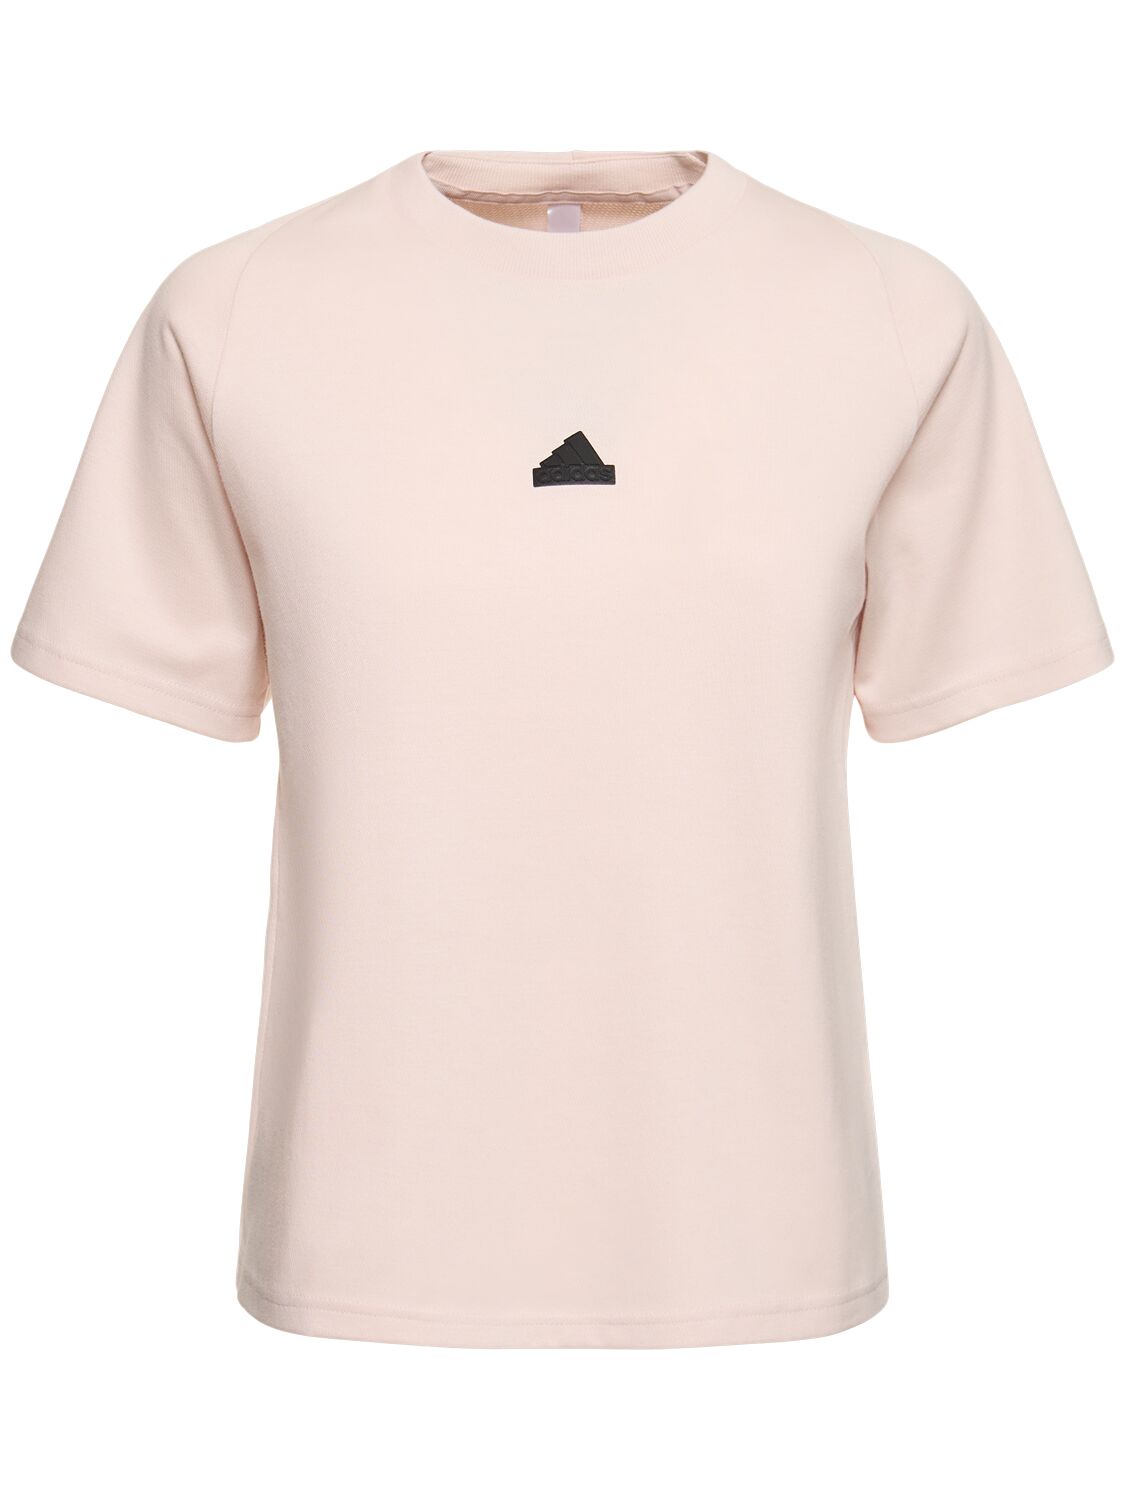 Adidas Originals Zone T-shirt In Pink